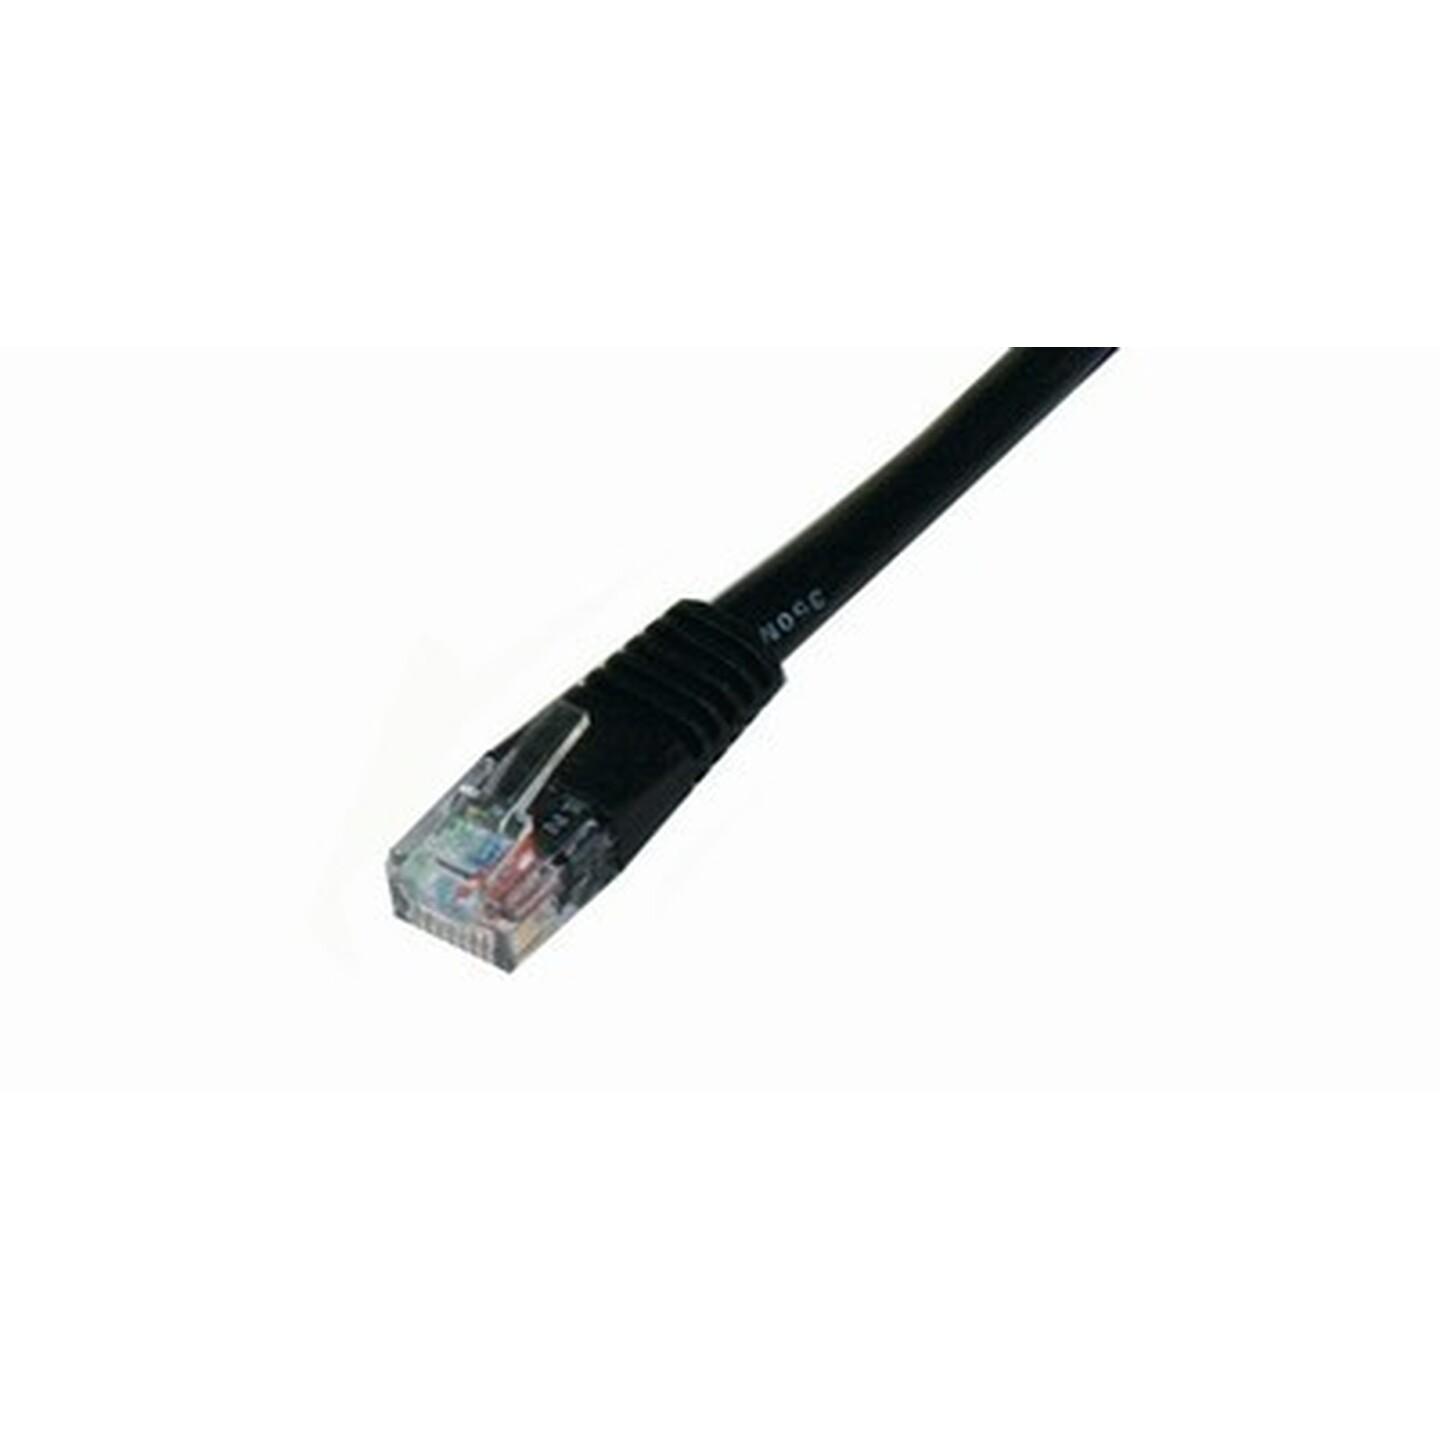 Cat 5E Crossover Cable 10m Black